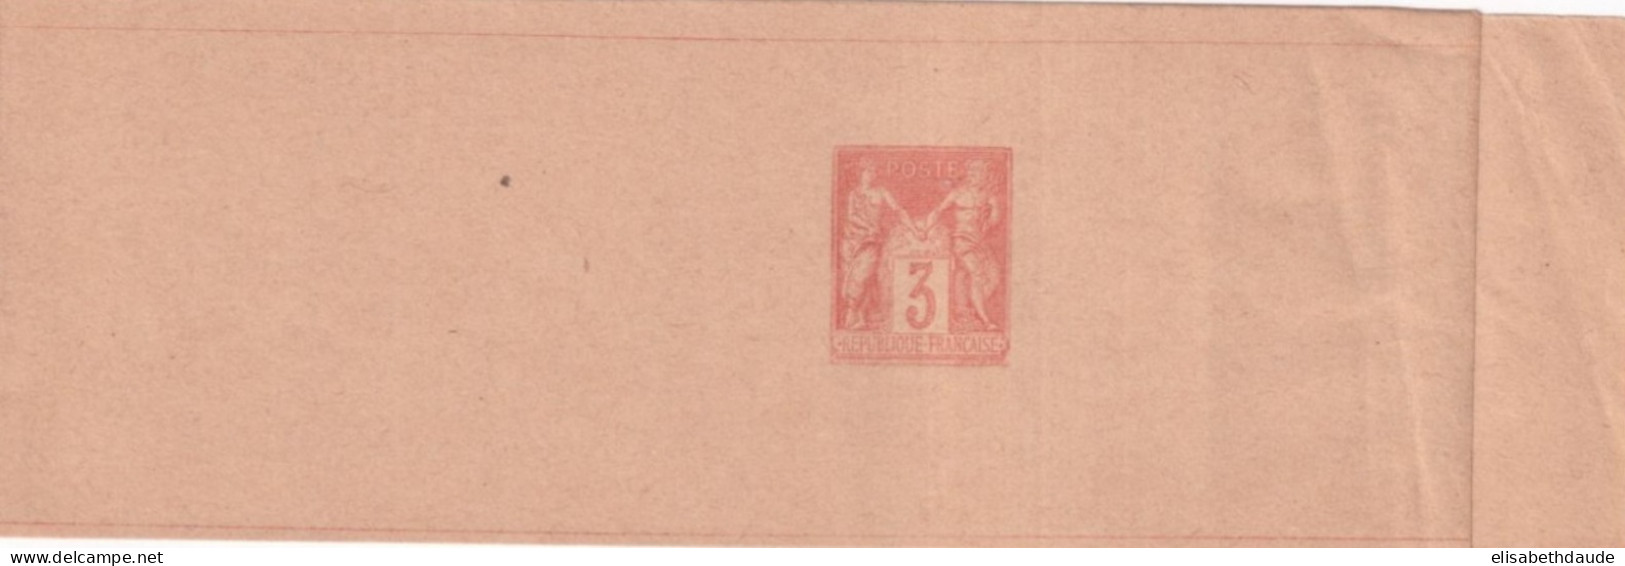 1882 - TYPE SAGE - BANDE ENTIER POSTAL 3c NEUVE - Wikkels Voor Tijdschriften